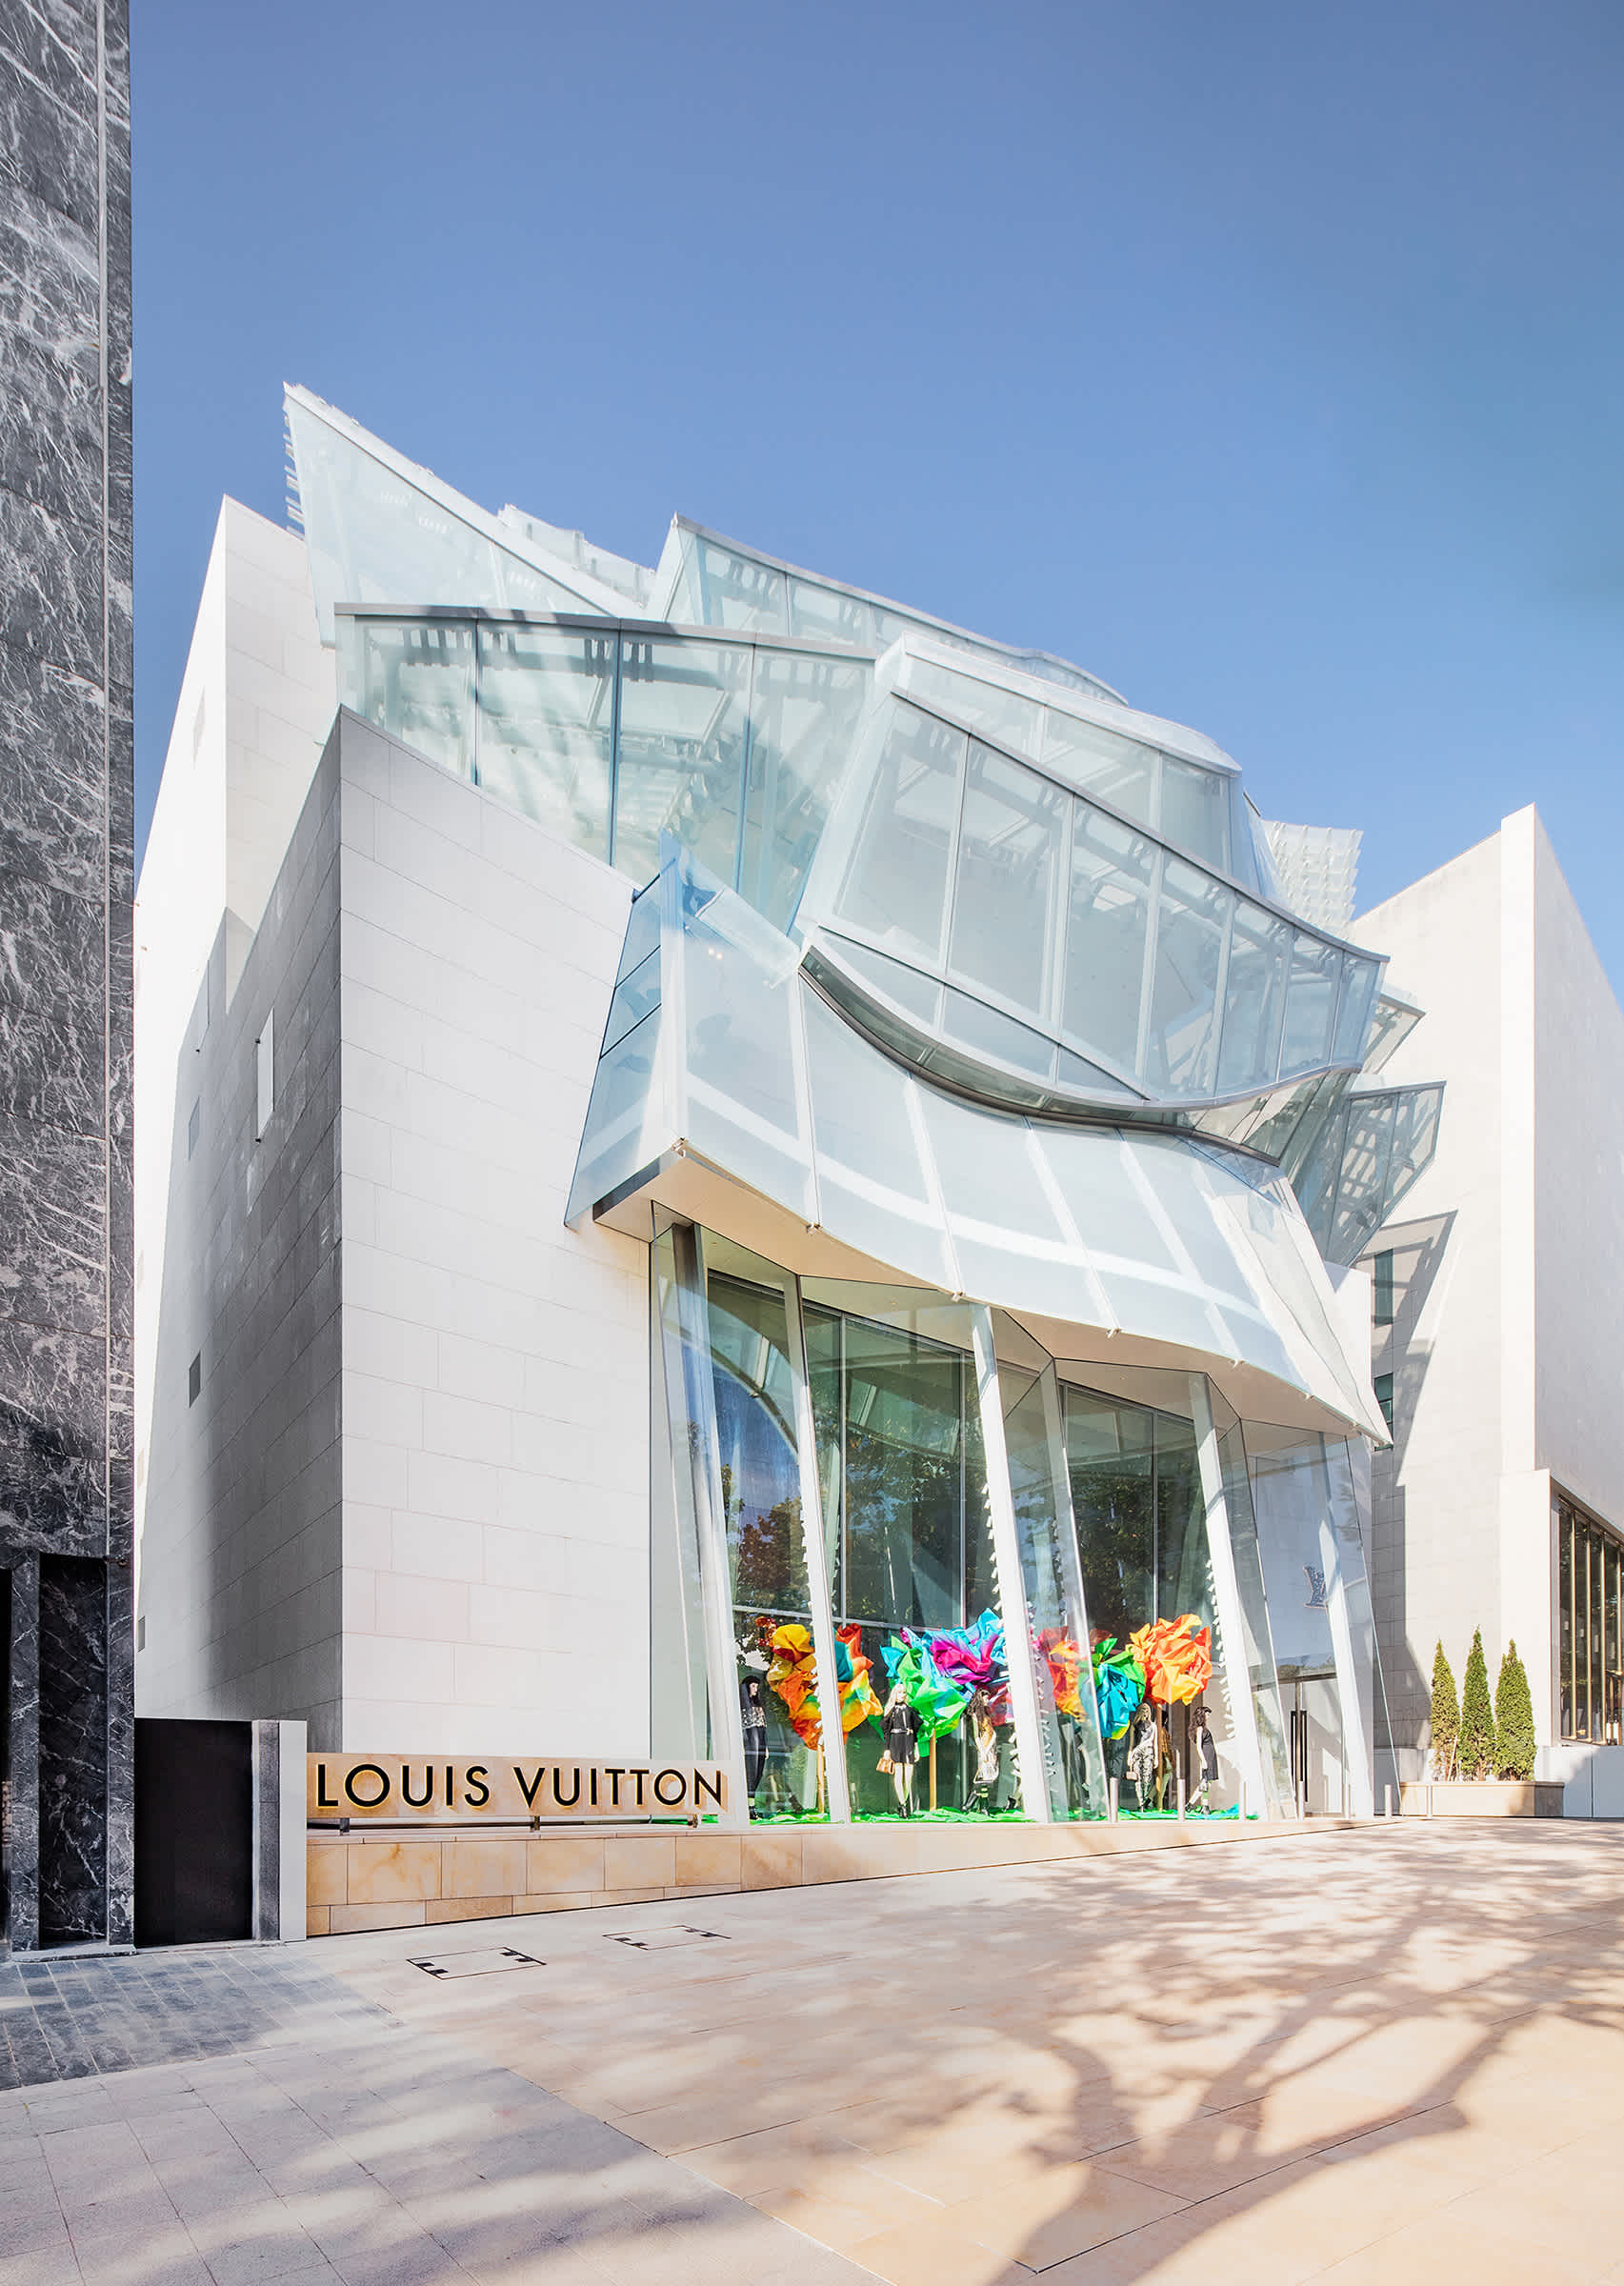 LOUIS VUITTON BUILDING, Seoul - Carbondale